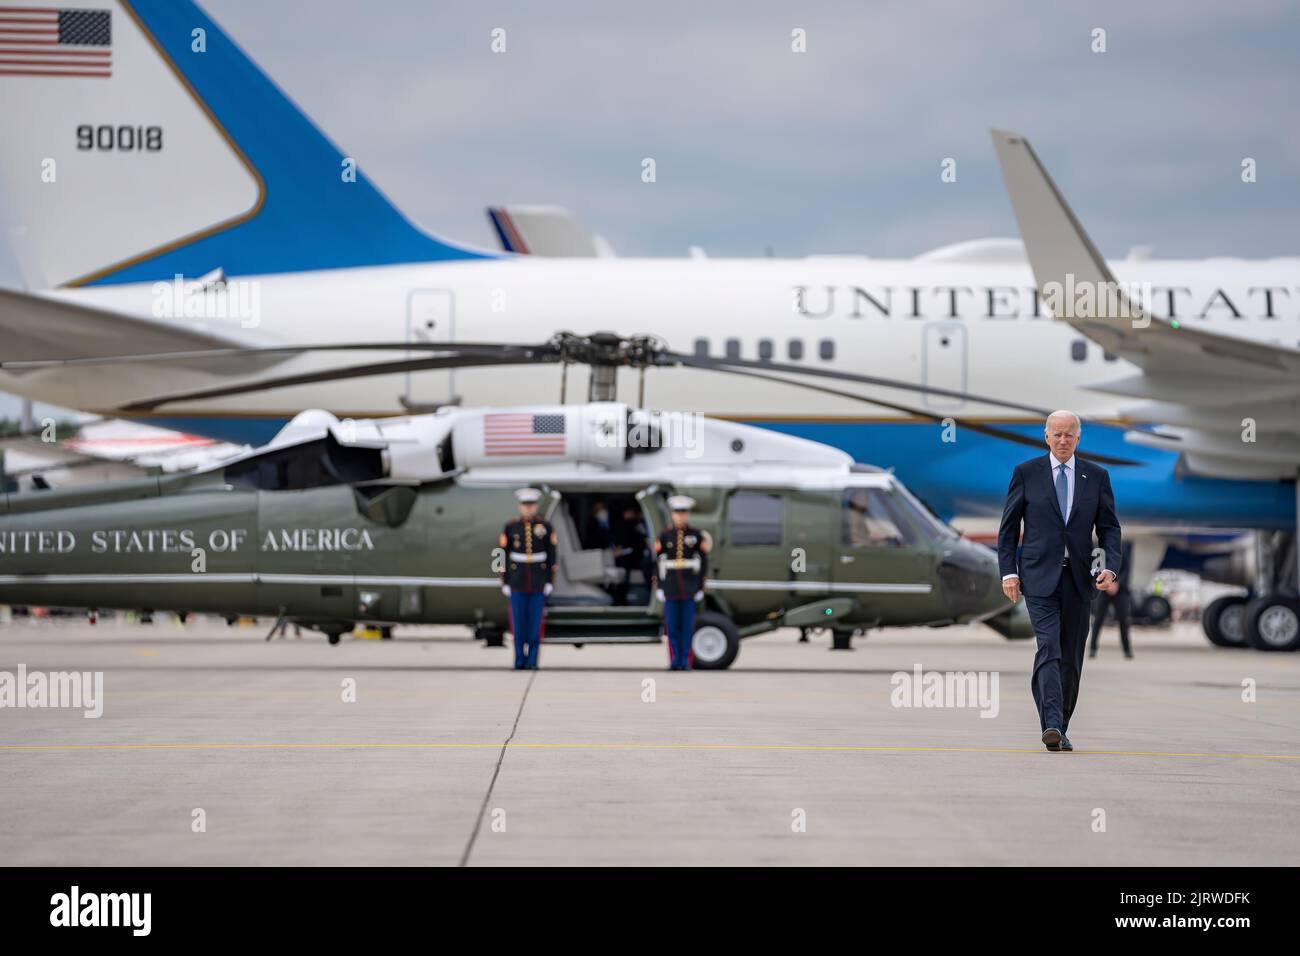 Präsident Joe Biden ist am Dienstag, den 28. Juni 2022, auf dem Weg zum NATO-Gipfel in Madrid an der Air Force One am internationalen Flughafen München vertreten. Ein Stützflugzeug ist auf dem Asphalt hinter Marine One zu sehen. (Offizielles Foto des Weißen Hauses von Carlos Fyfe) Stockfoto